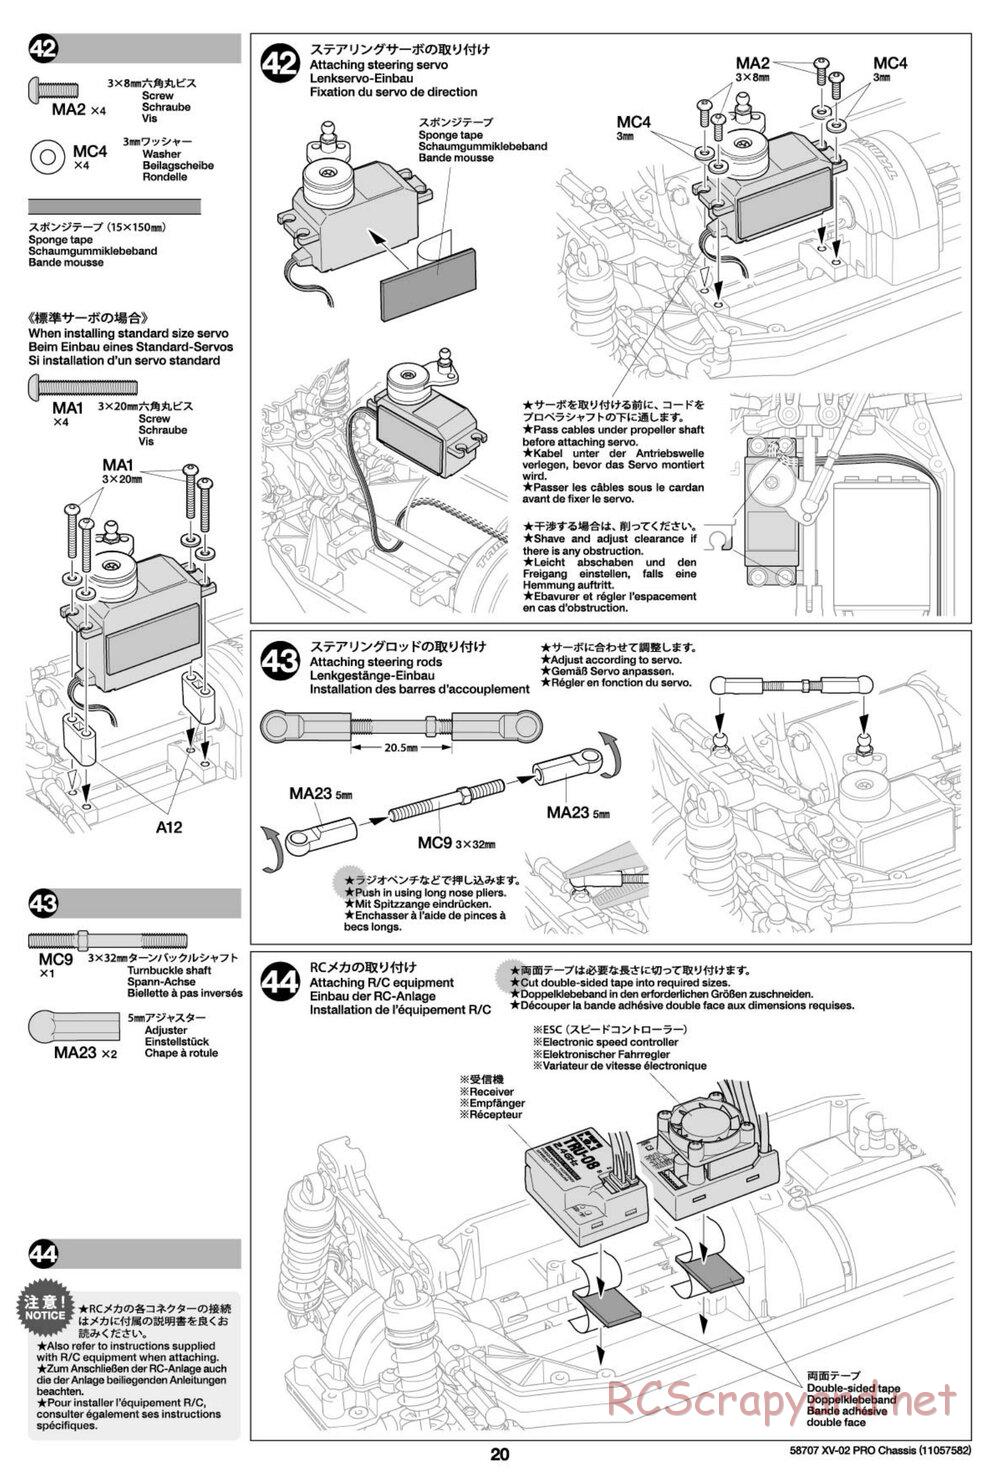 Tamiya - XV-02 Pro Chassis - Manual - Page 20